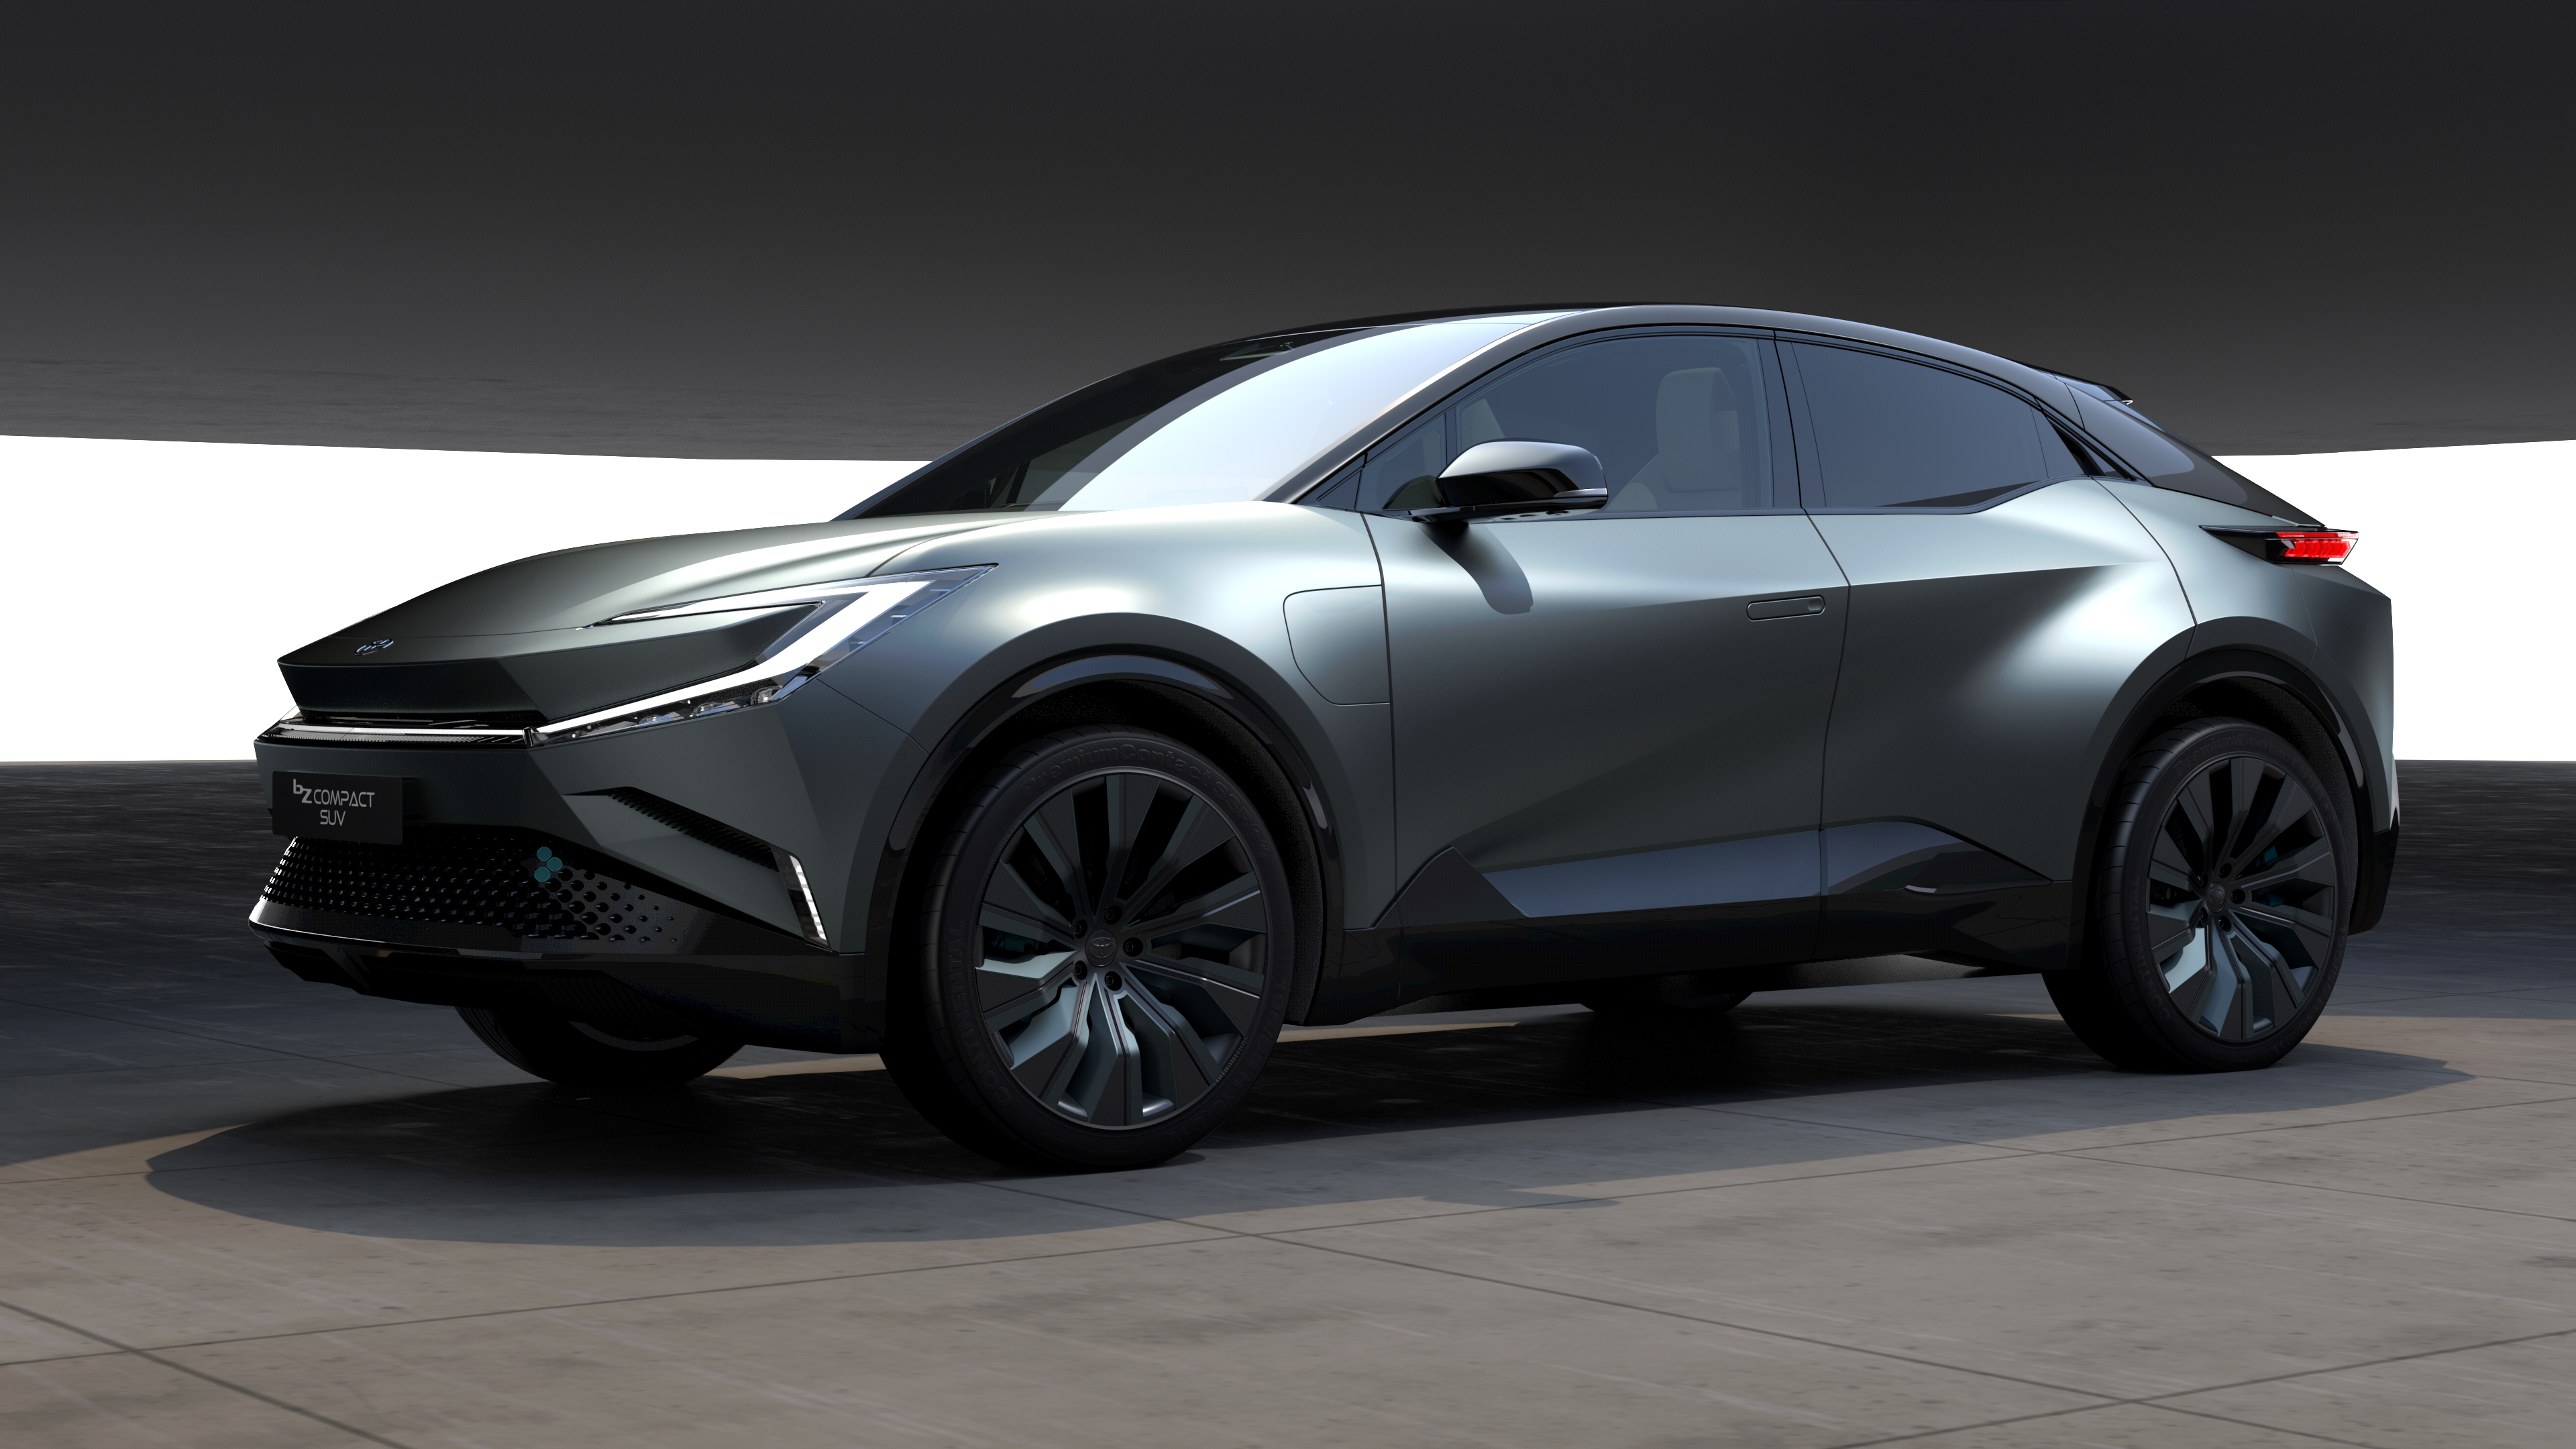 Uno sguardo al futuro: Toyota bZ Compact SUV Concept 